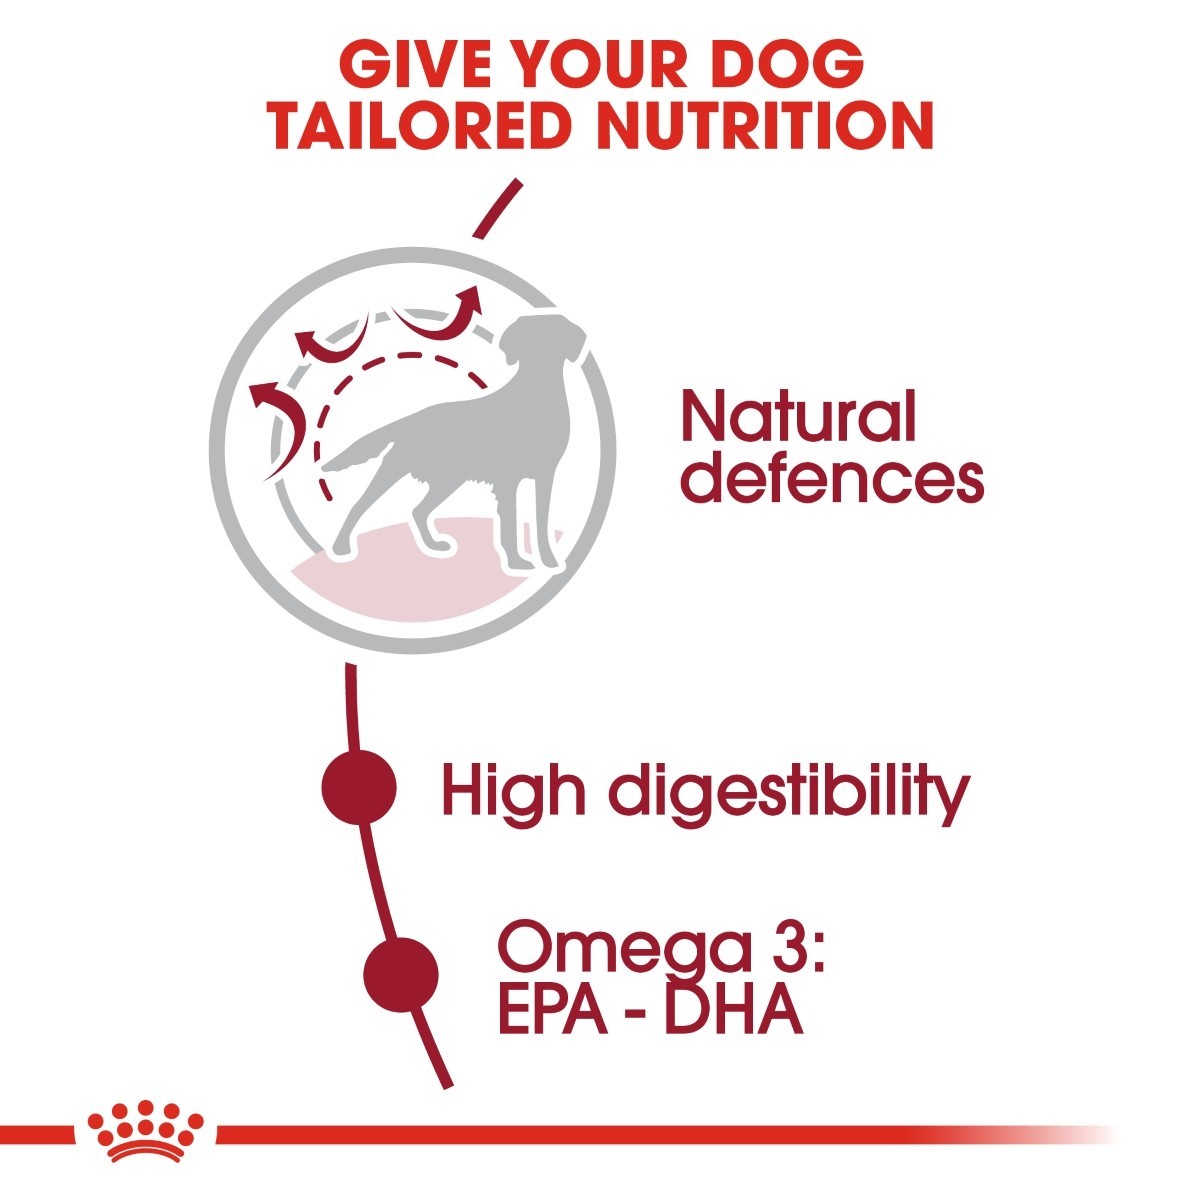 Royal Canin Medium Adult Dry Dog Food - Targa Pet Shop